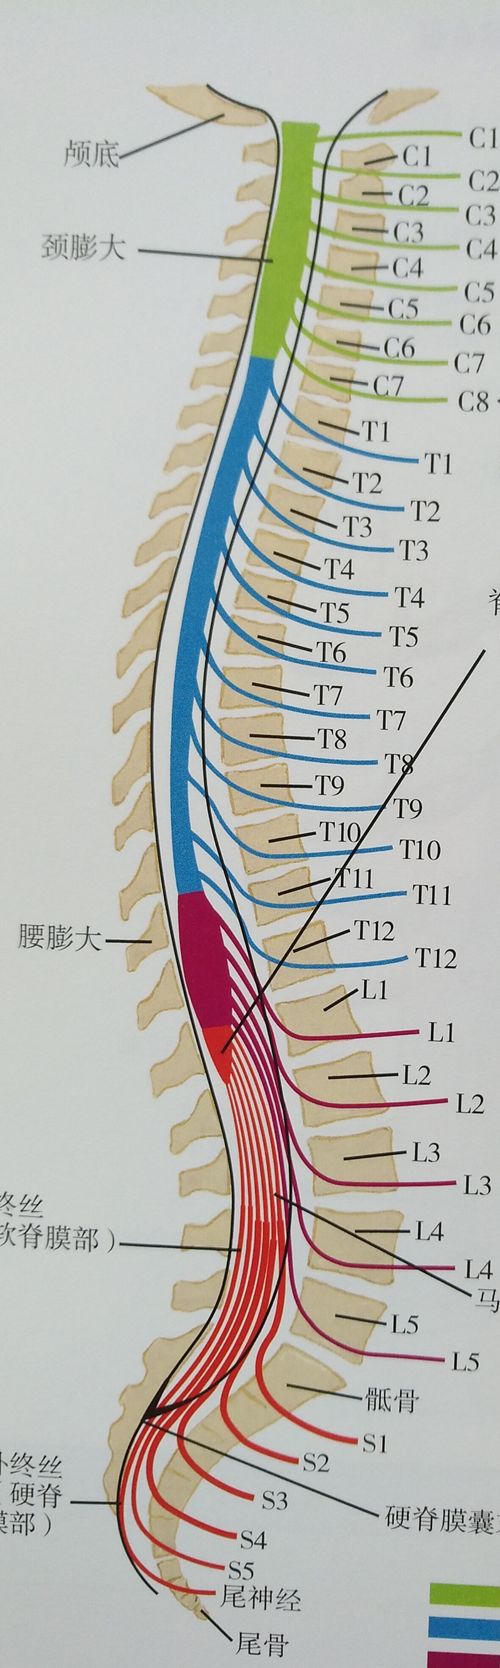 腰椎间盘位置深在,后方为骨性椎管,突出不可能通过手法揿回去!